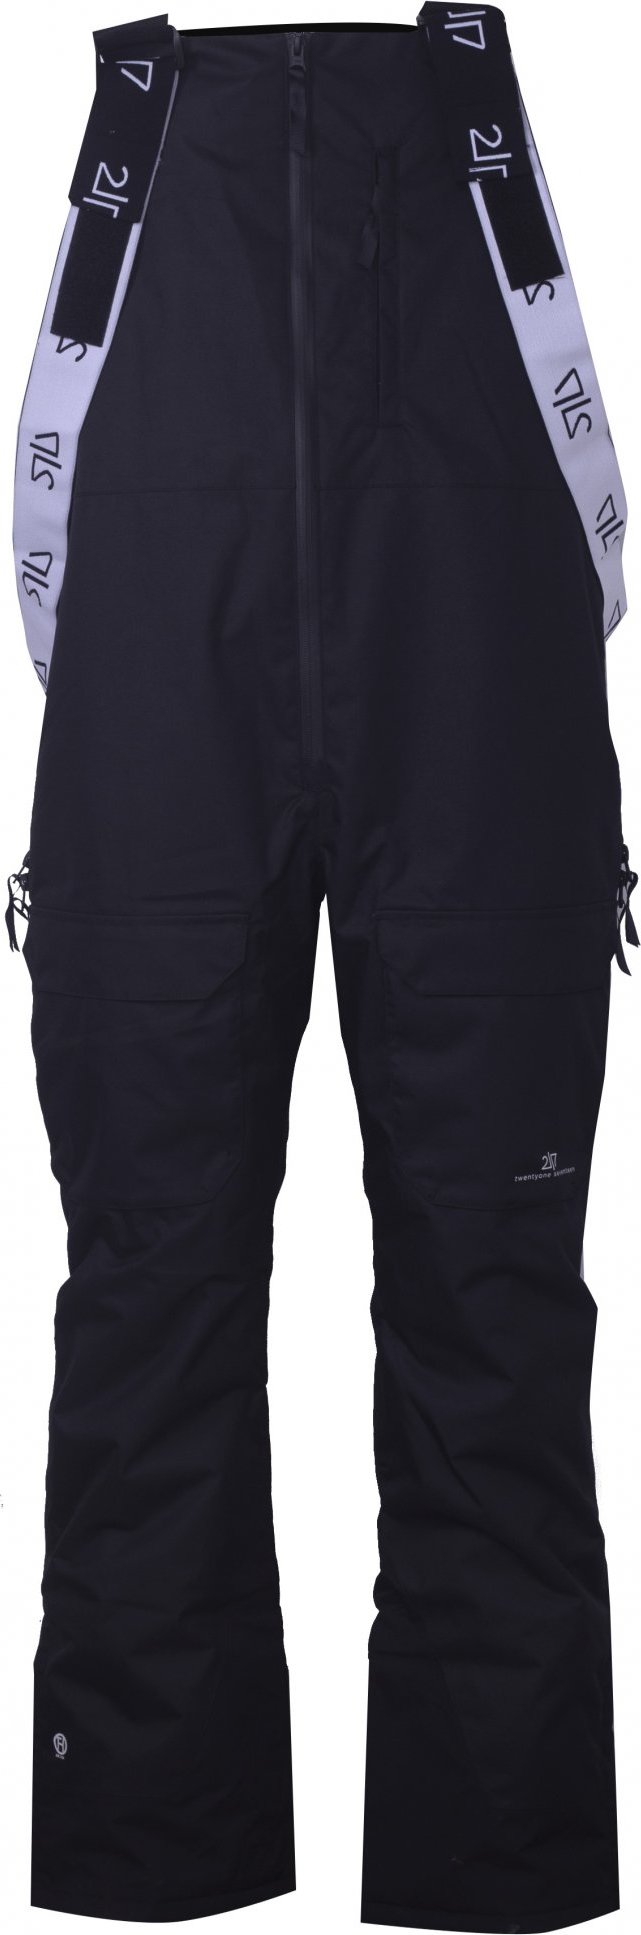 Pánské lyžařské kalhoty s náprsenkou 2117 Backa Eco černá Velikost: L